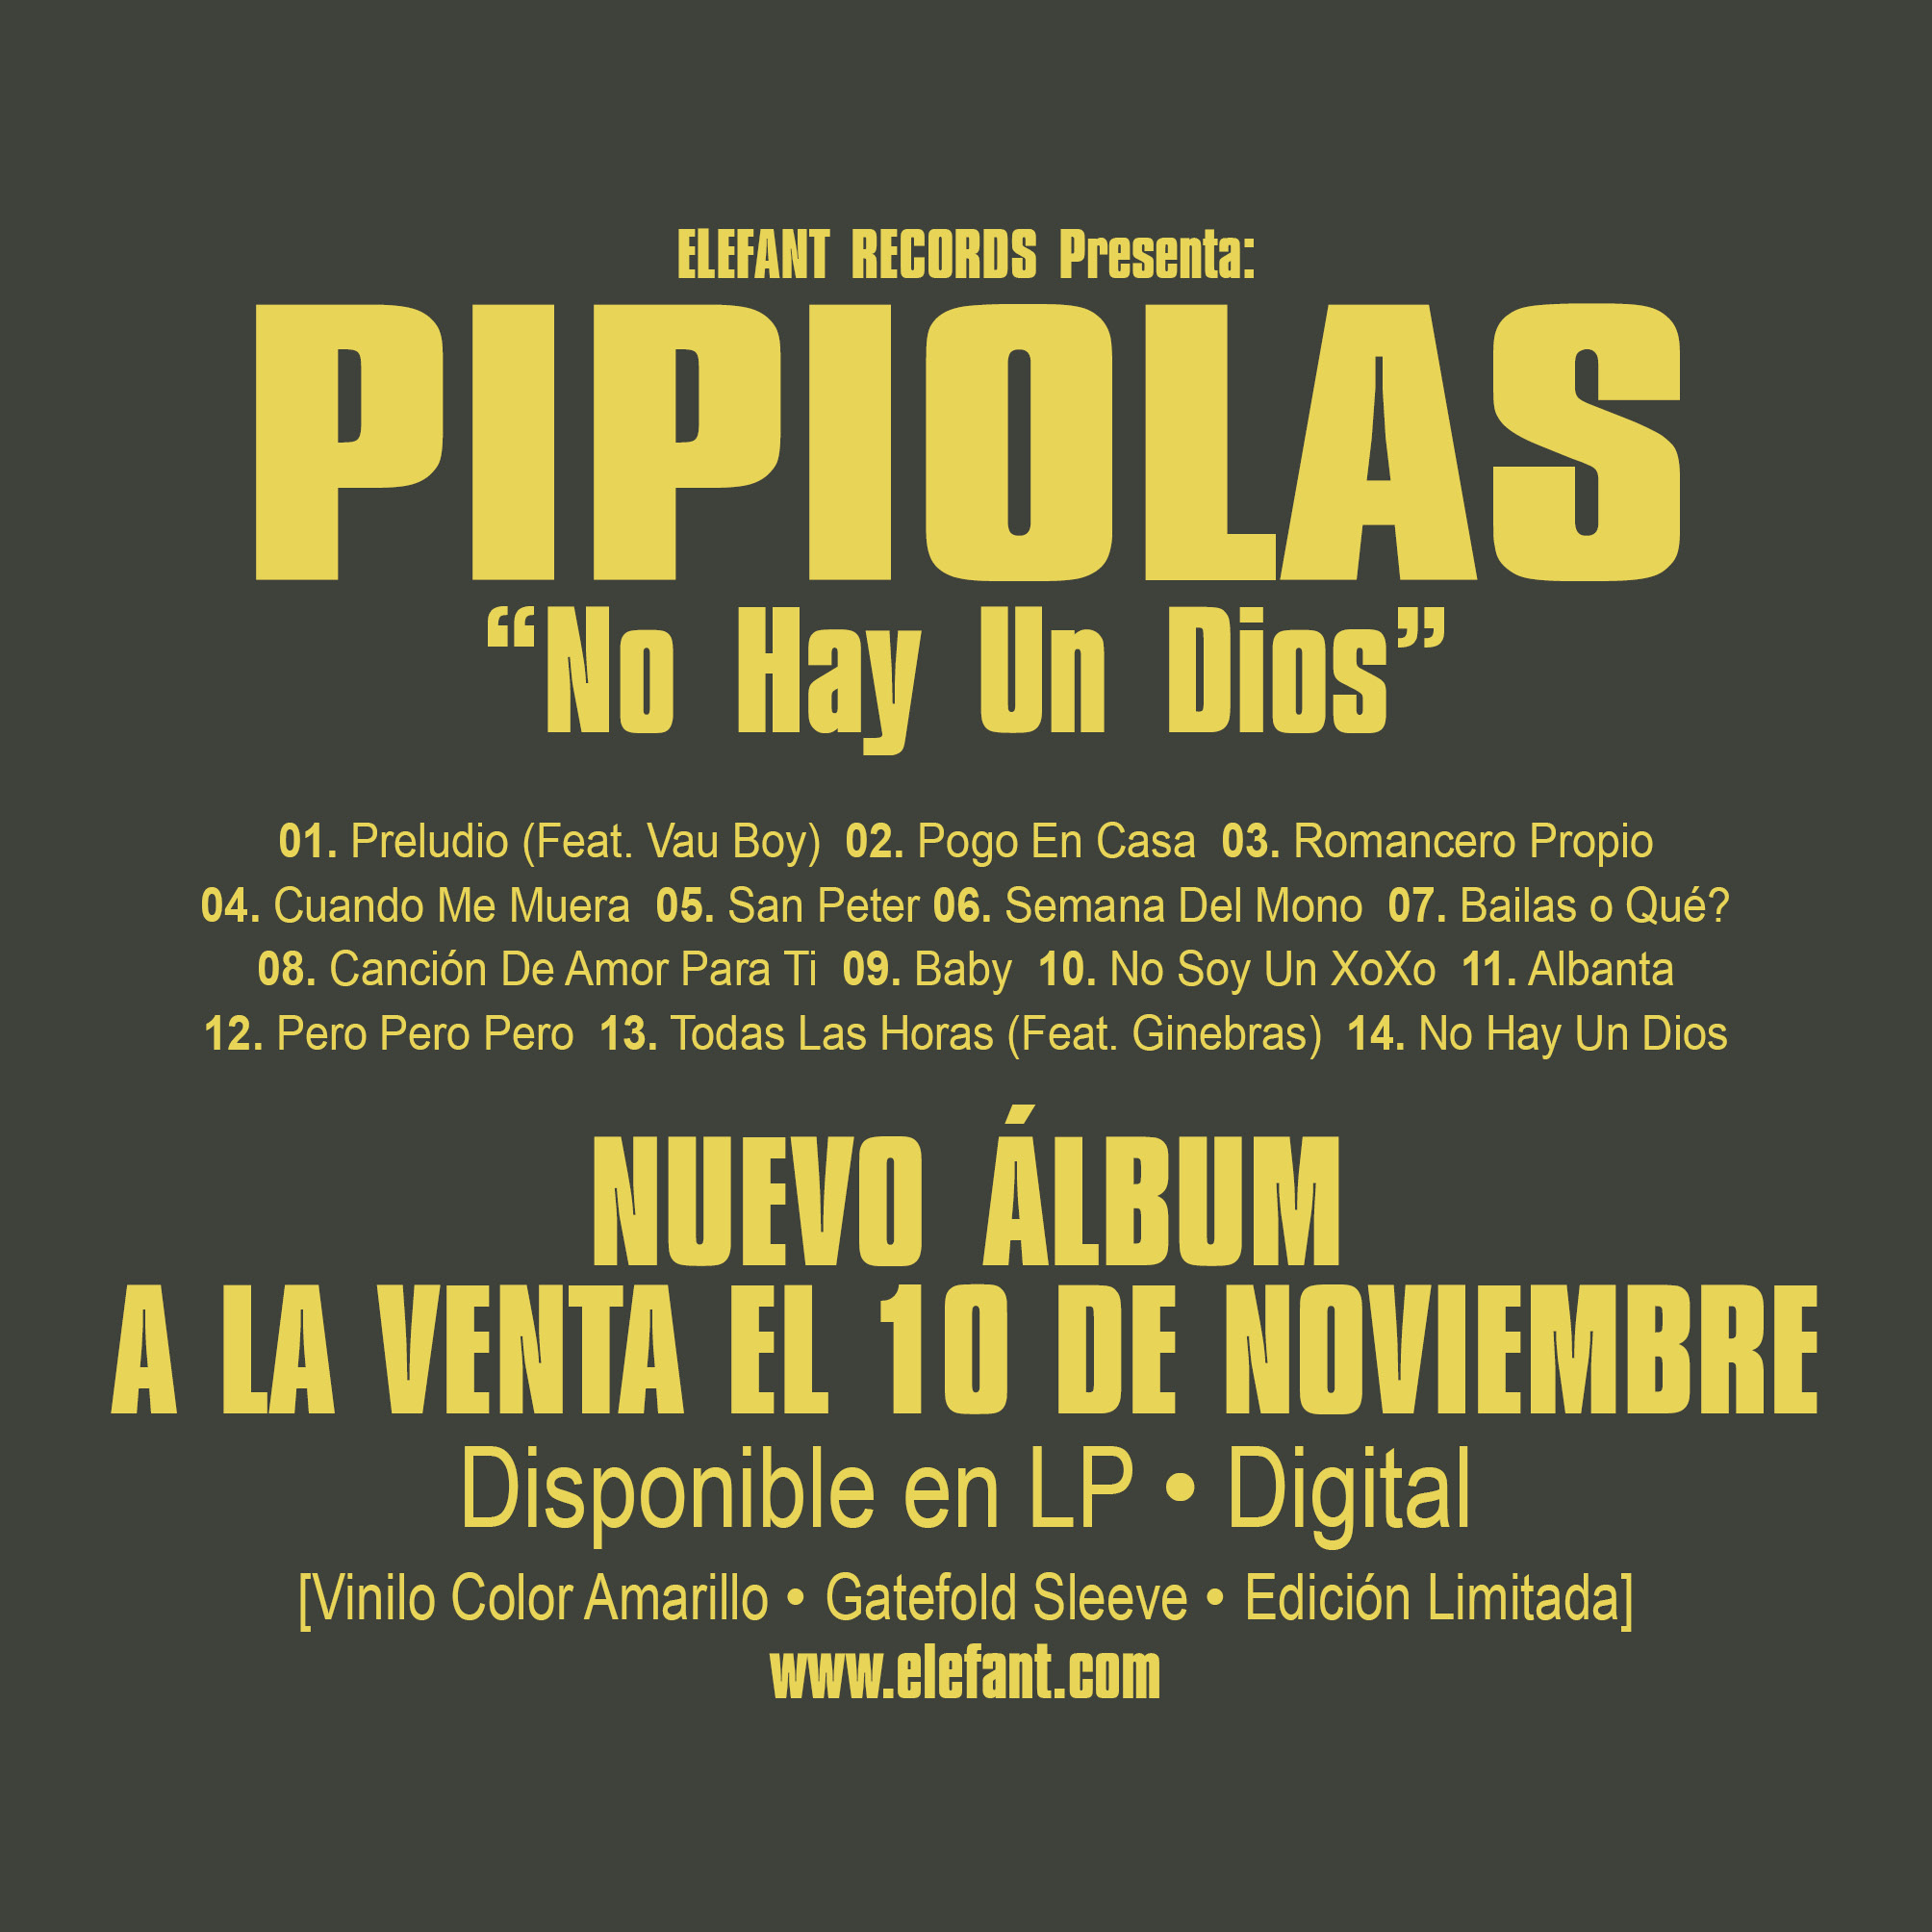 PIPIOLAS "No Hay Un Dios" LP